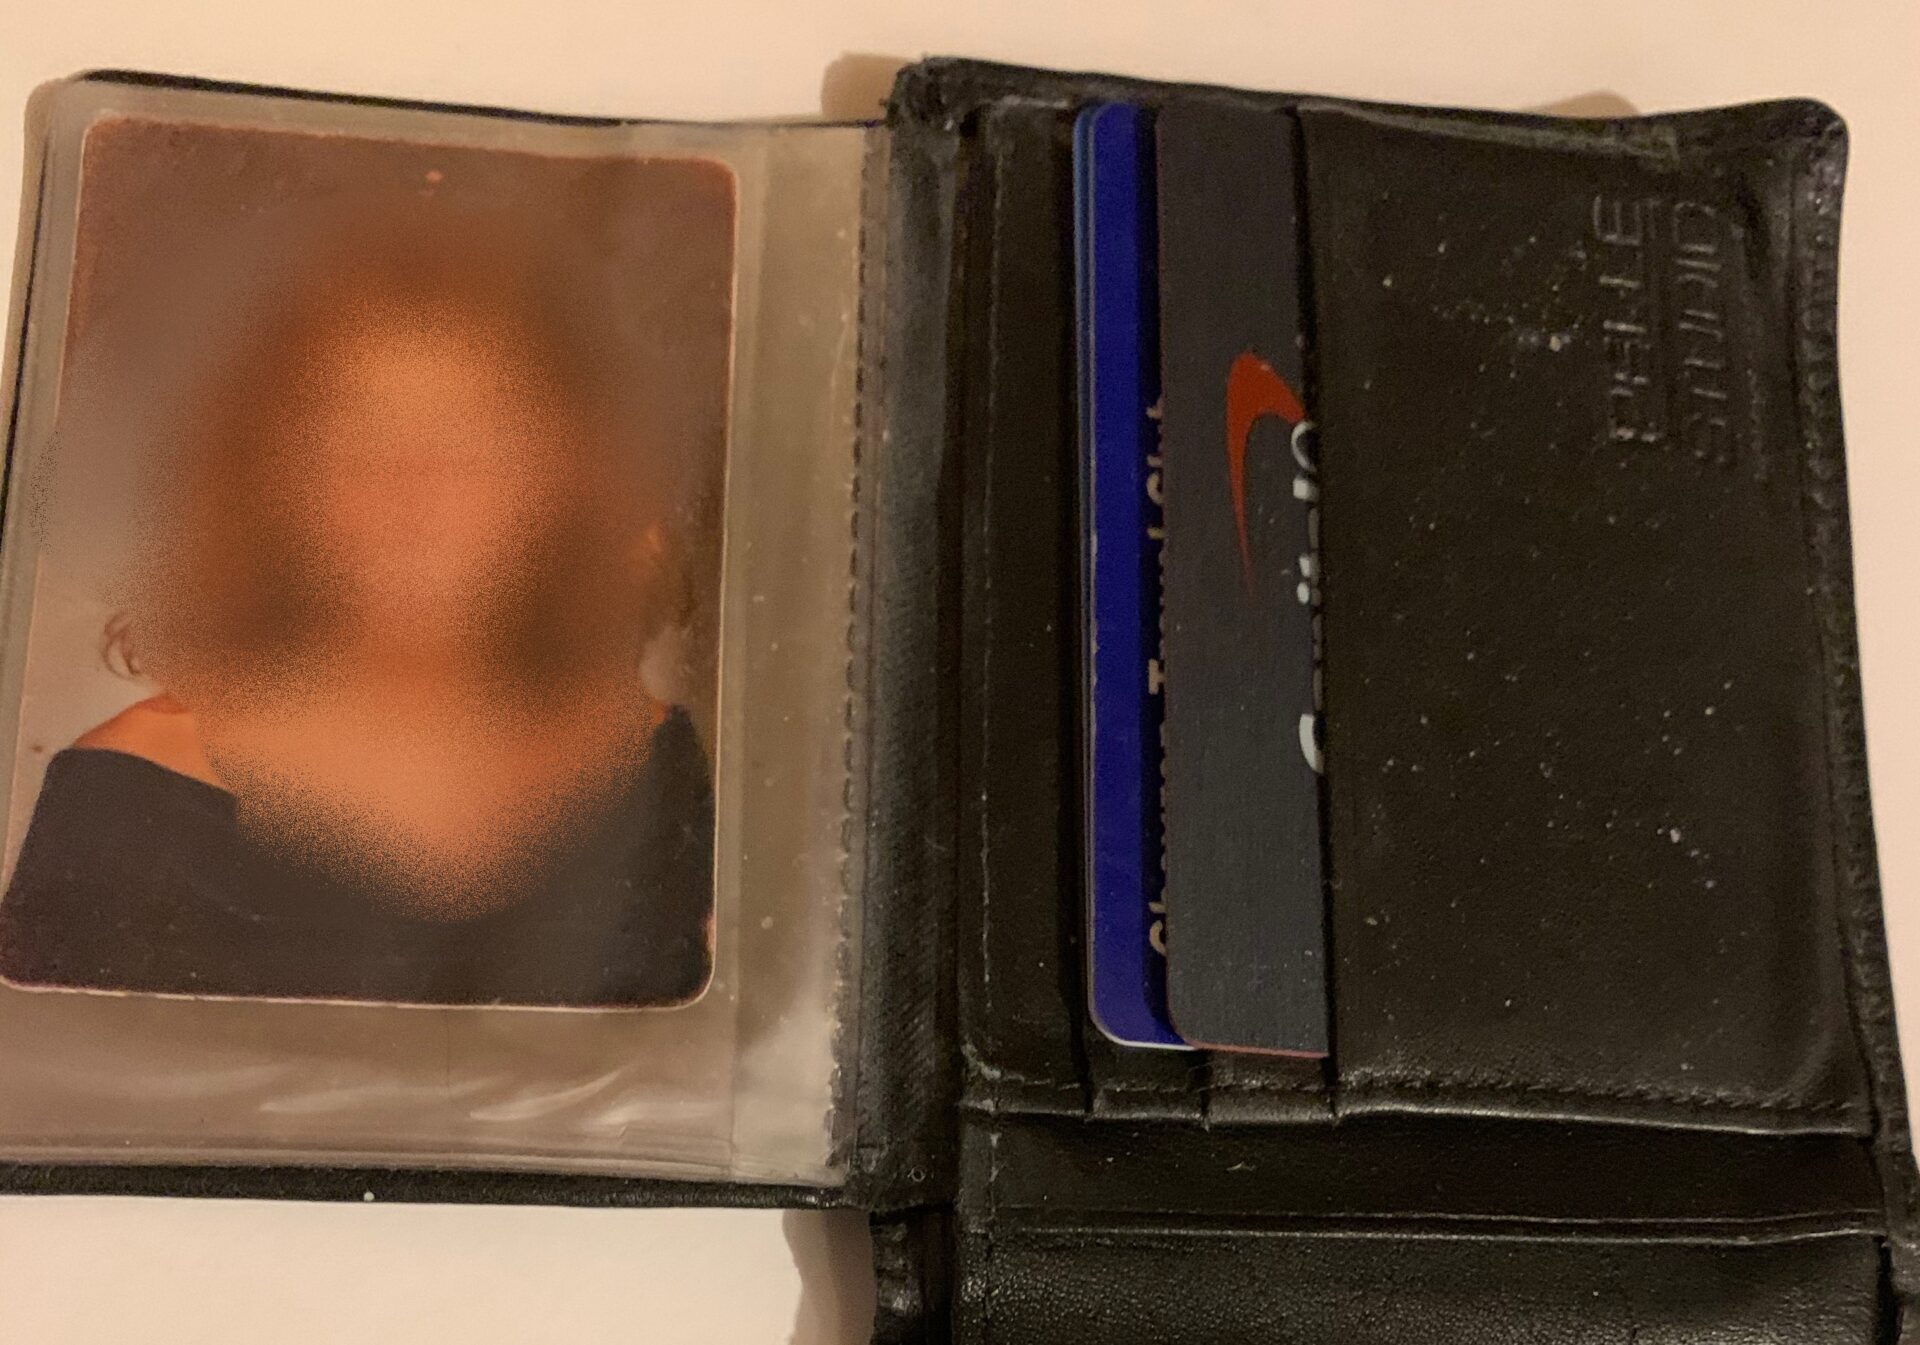 His Wallet